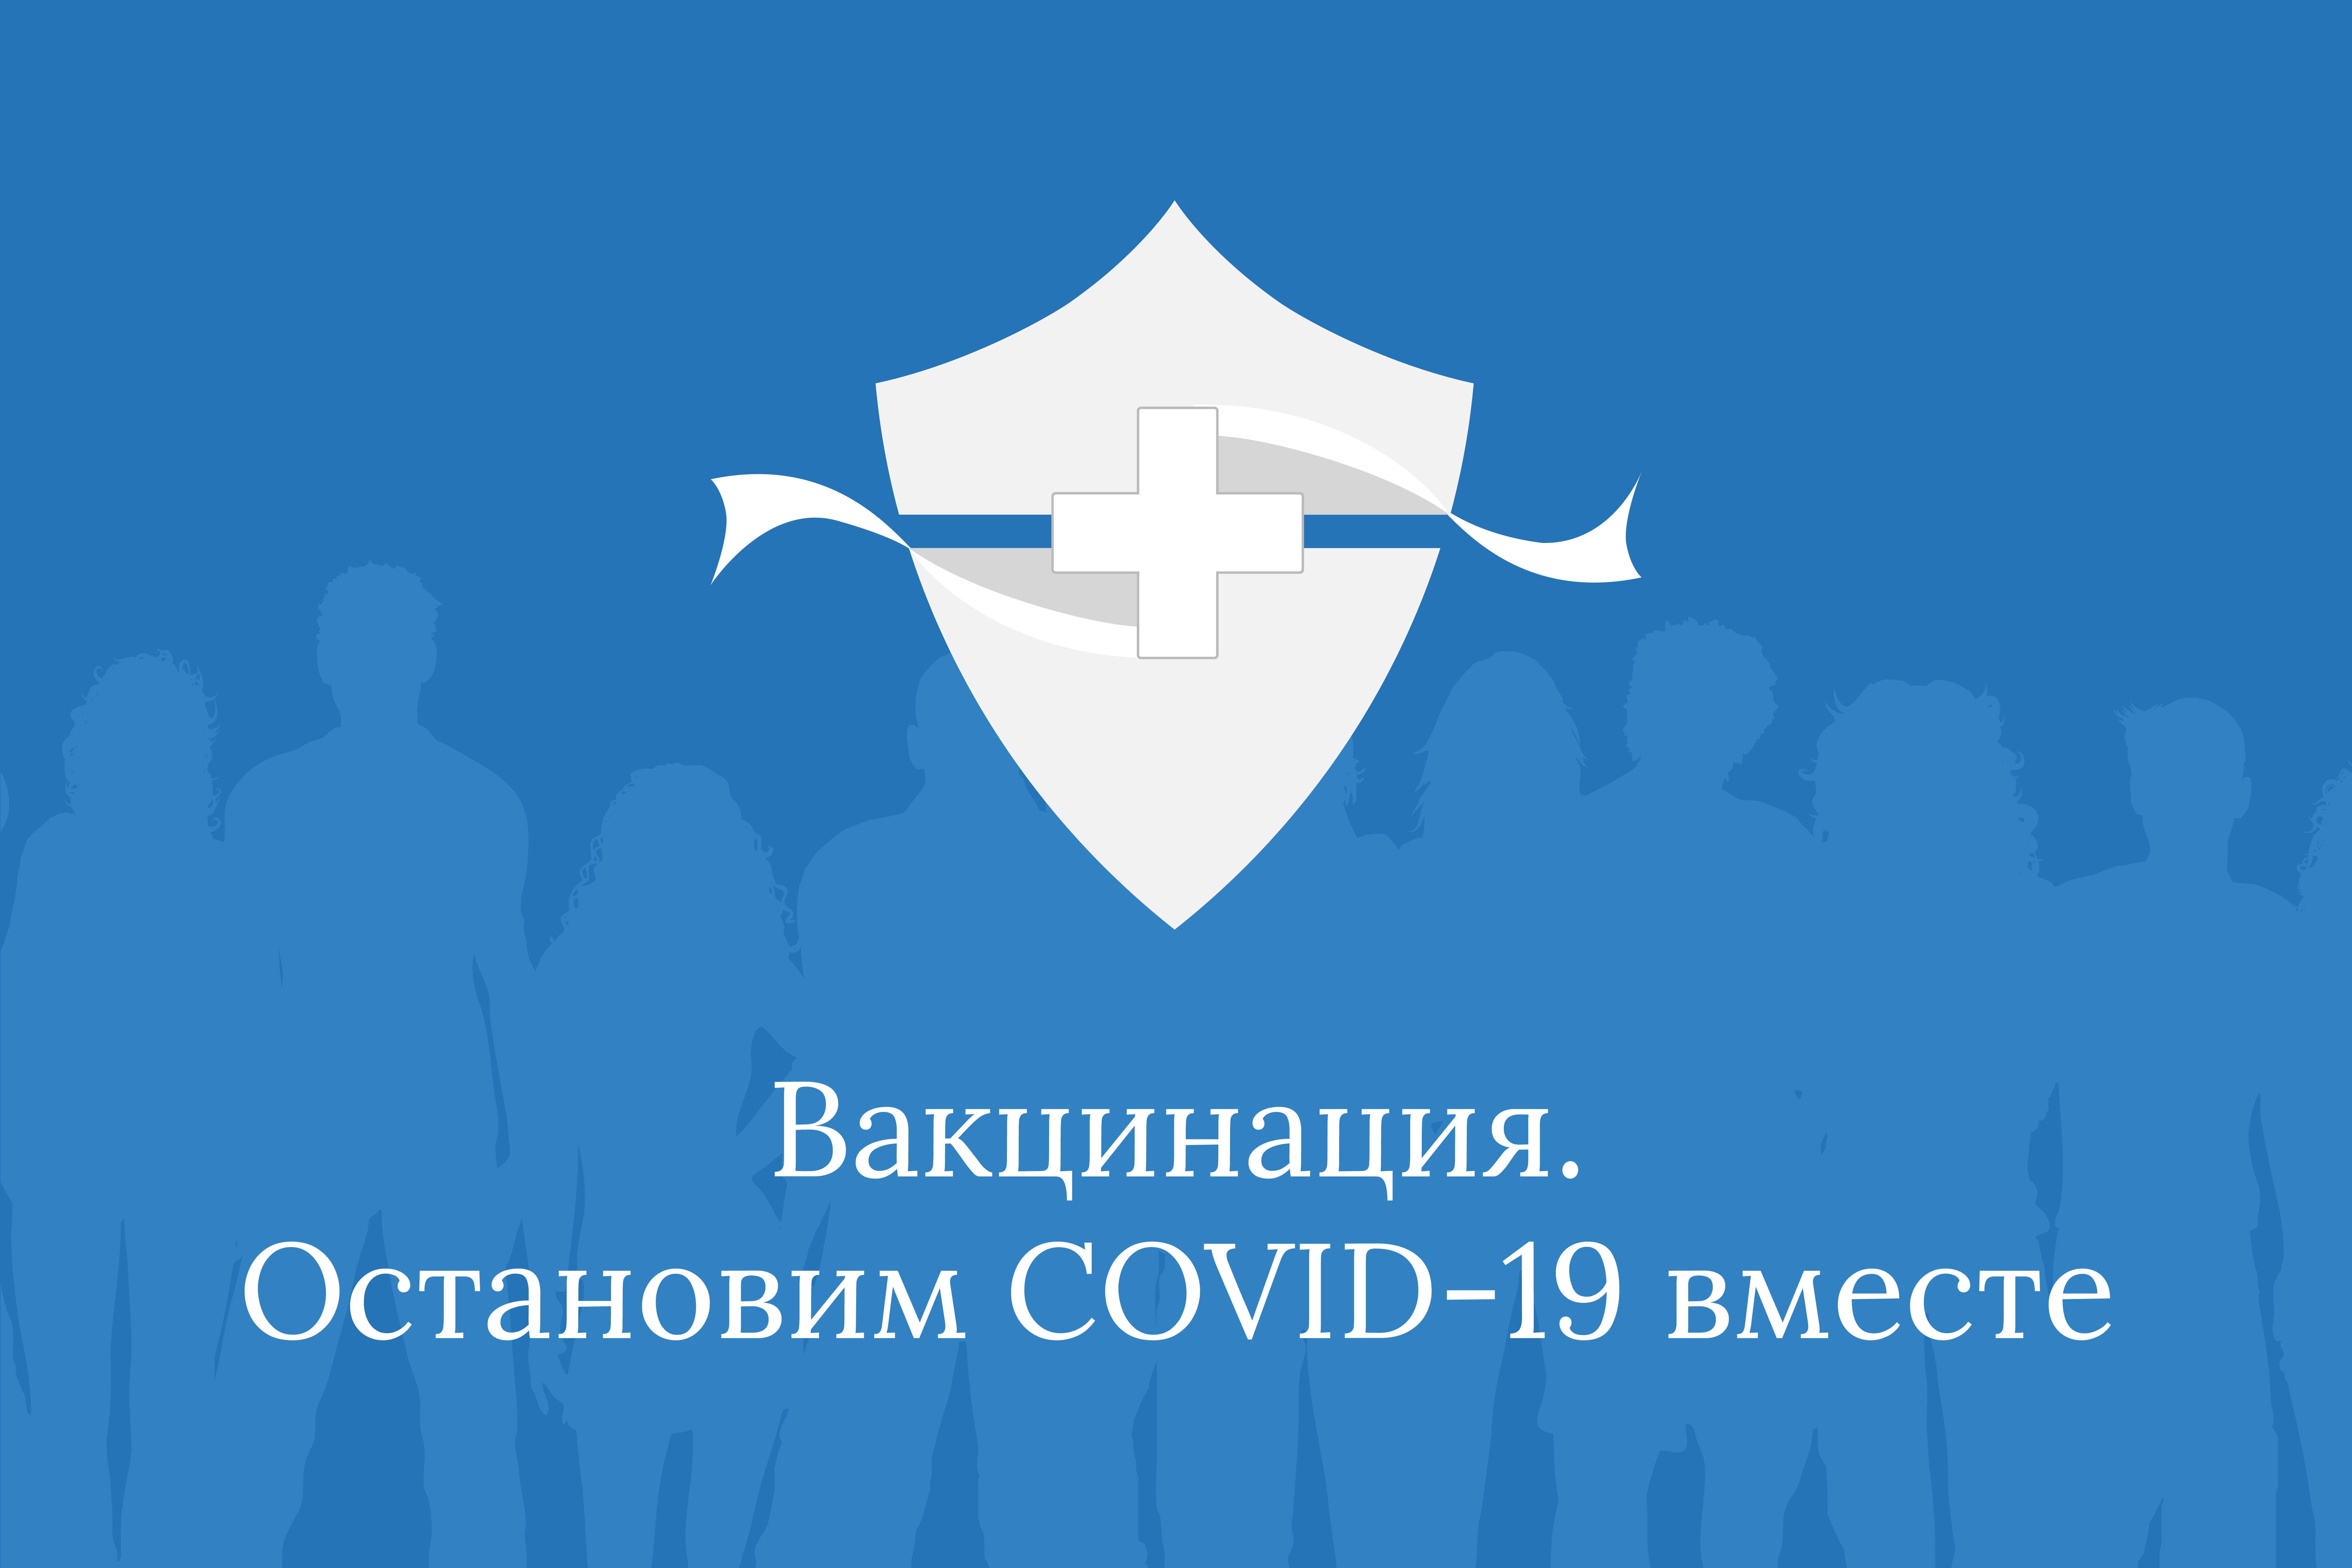  Информационные материалы по профилактике новой коронавирусной инфекции COVID-19